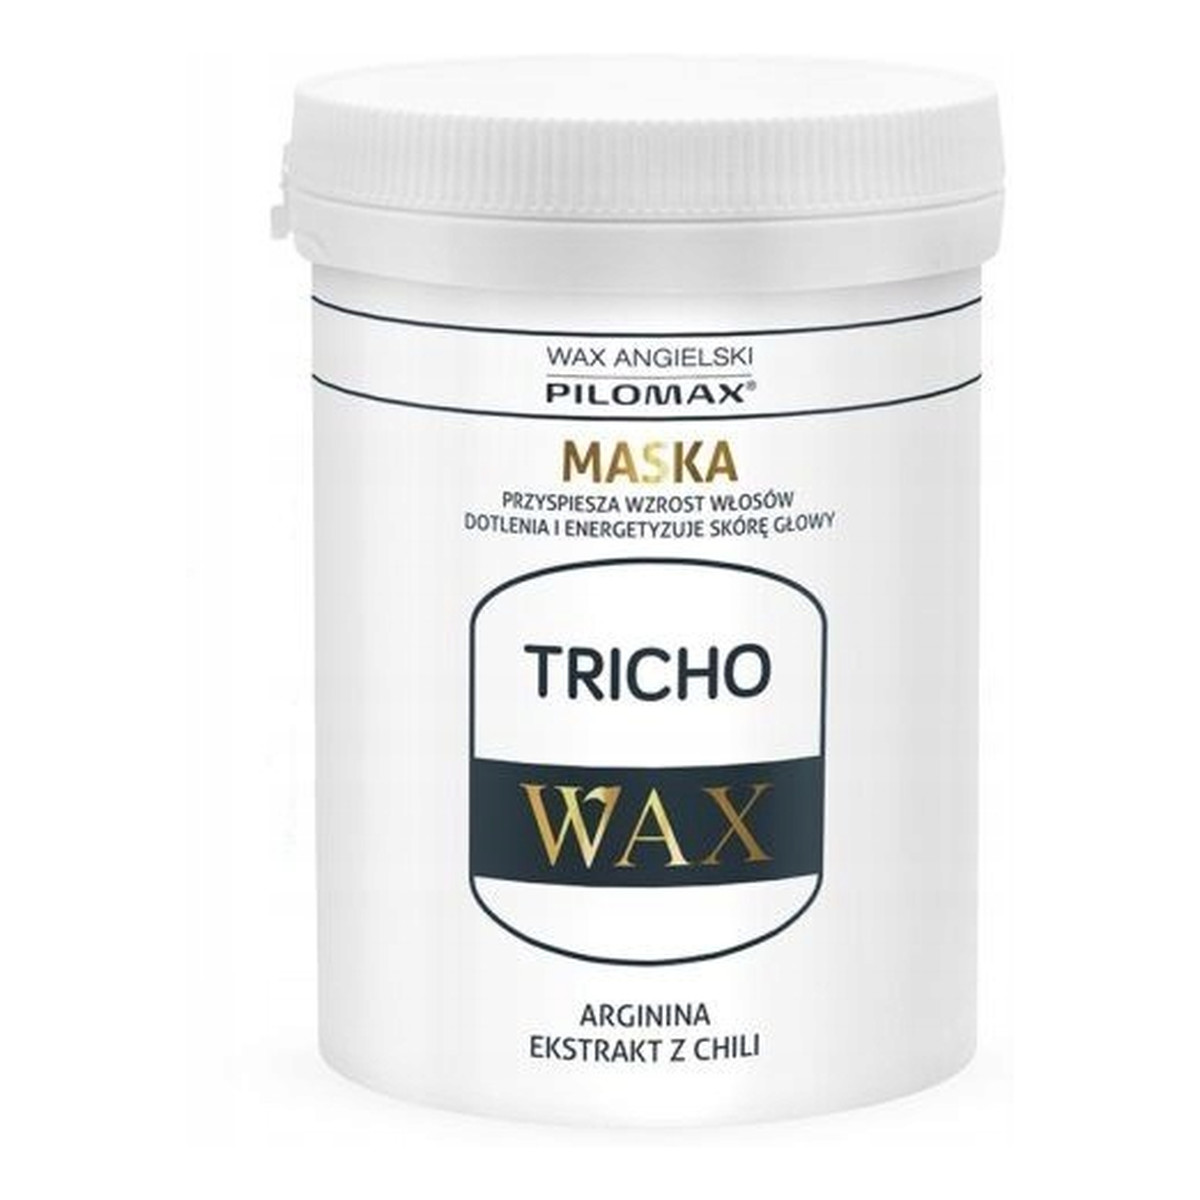 Pilomax Wax Tricho Maska przyspieszająca wzrost włosów 240ml